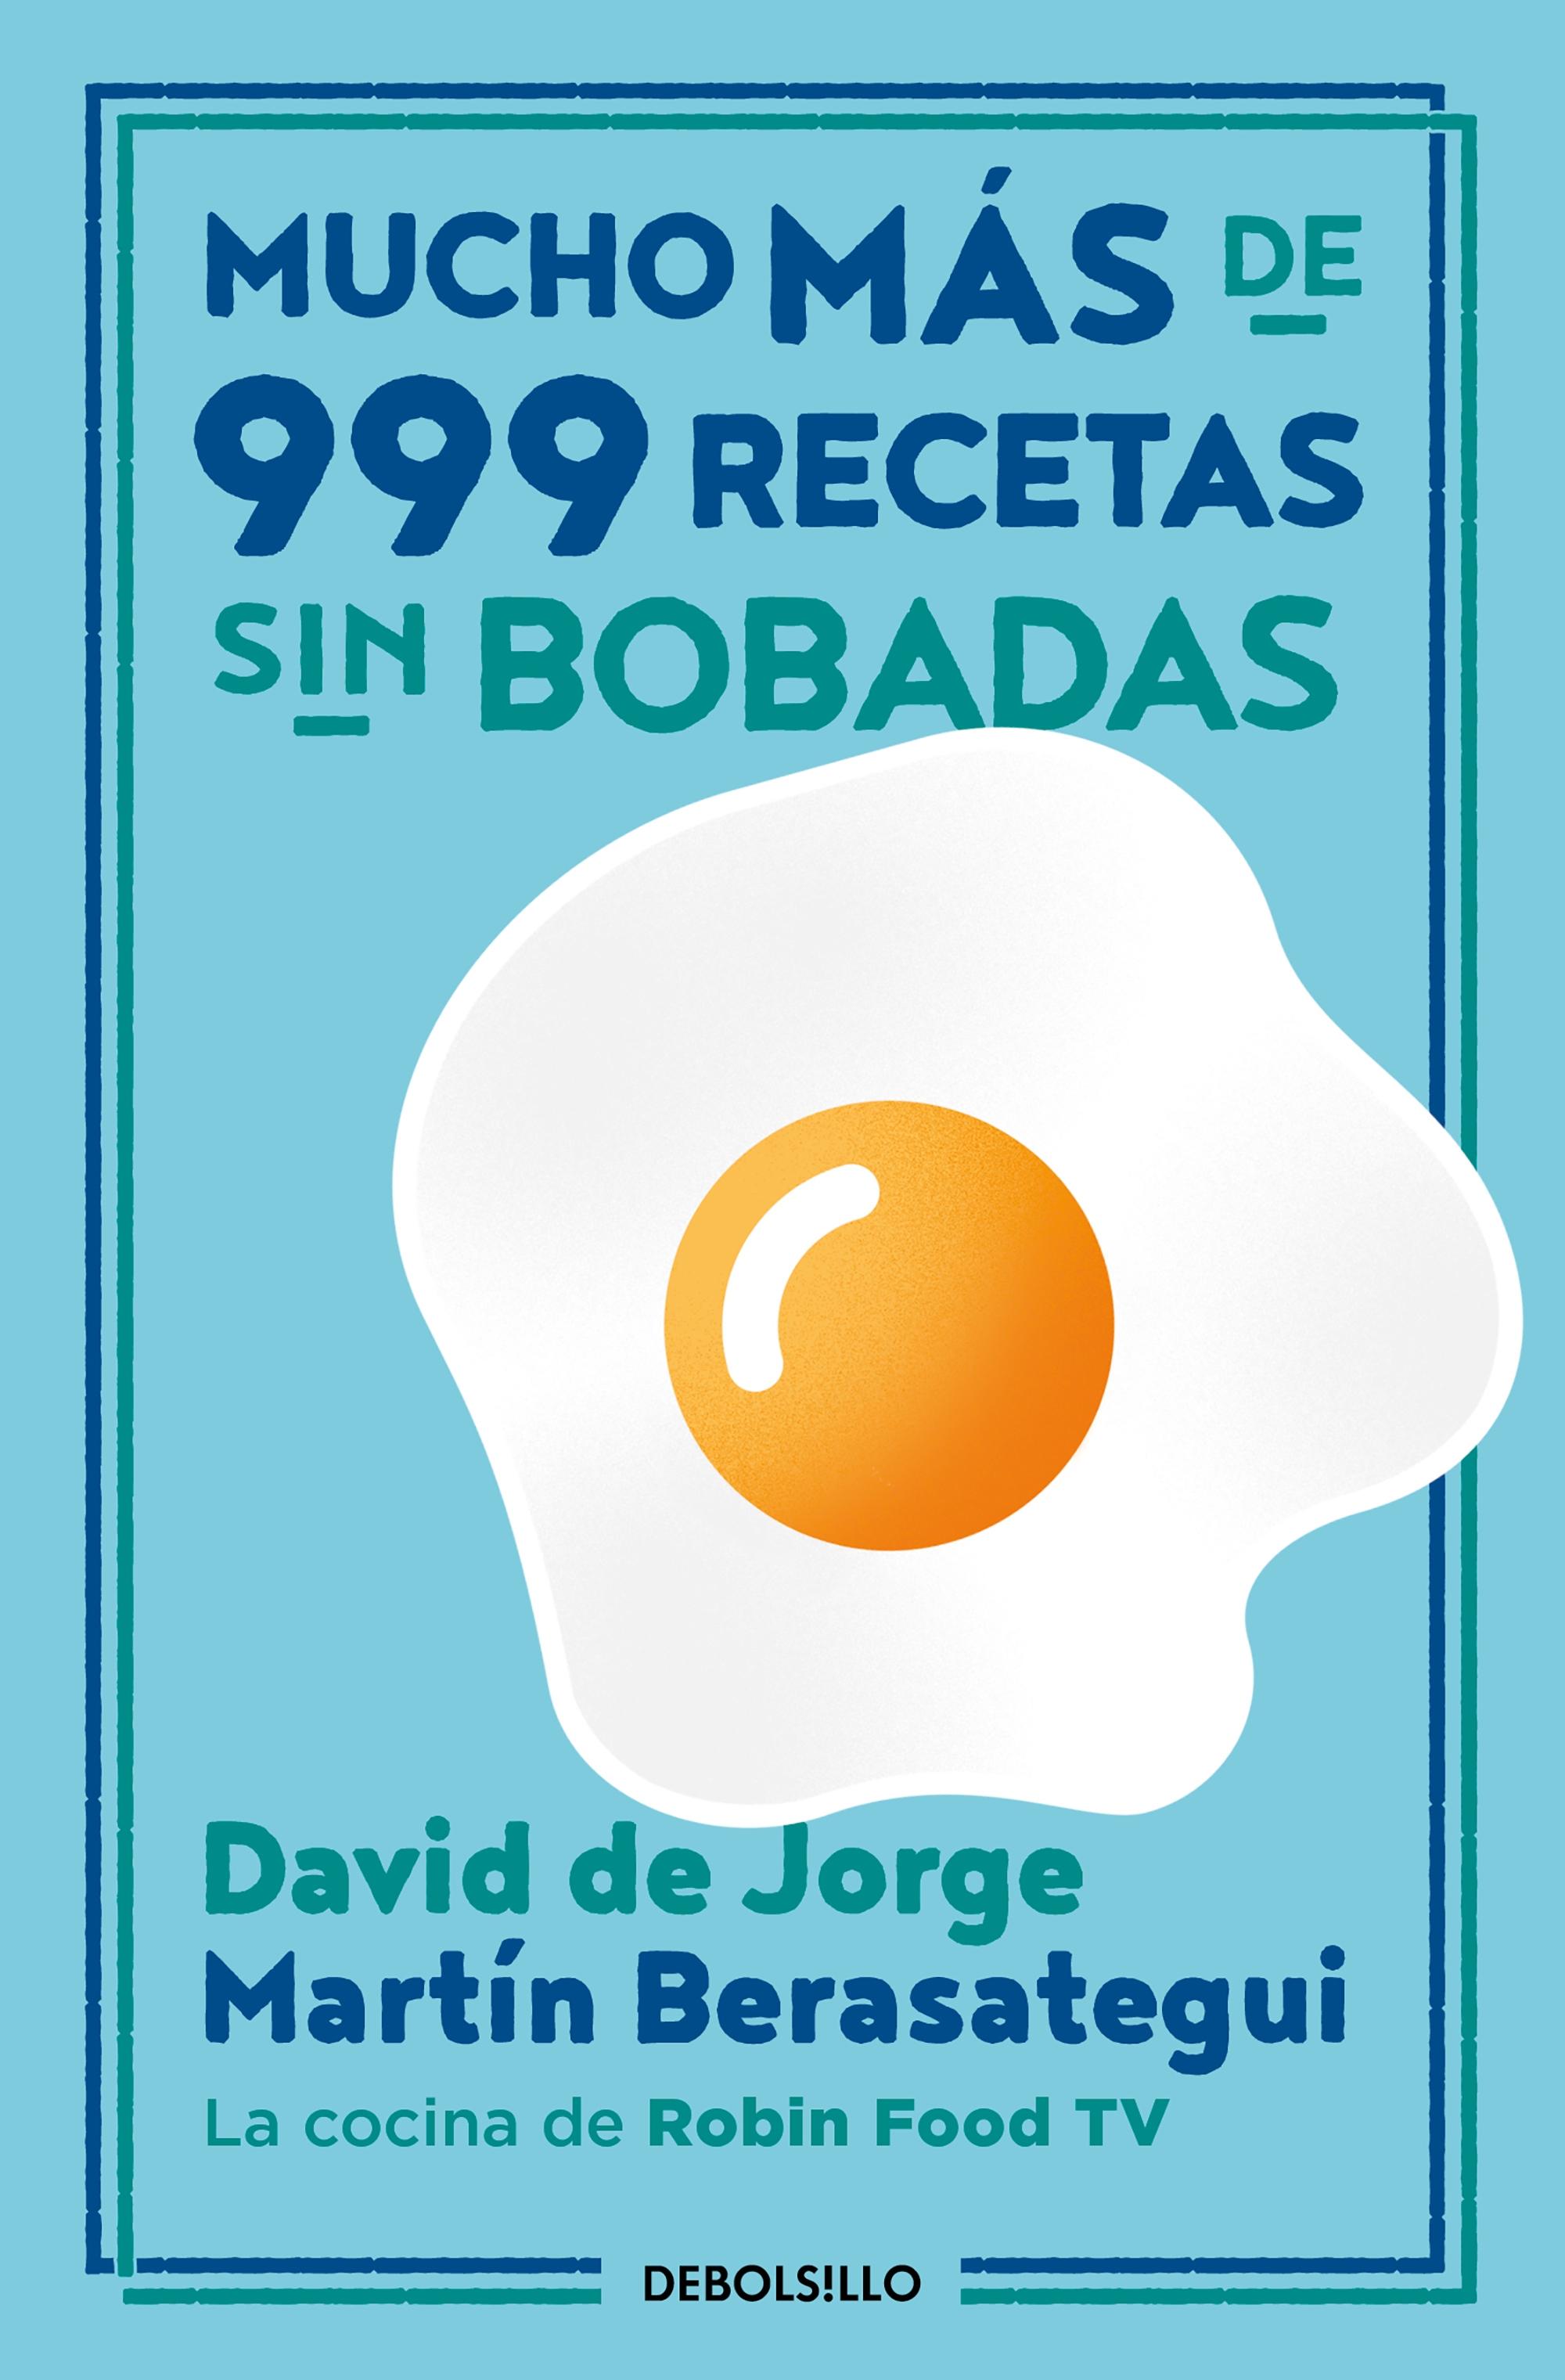 Mucho Más de 999 Recetas sin Bobadas. 